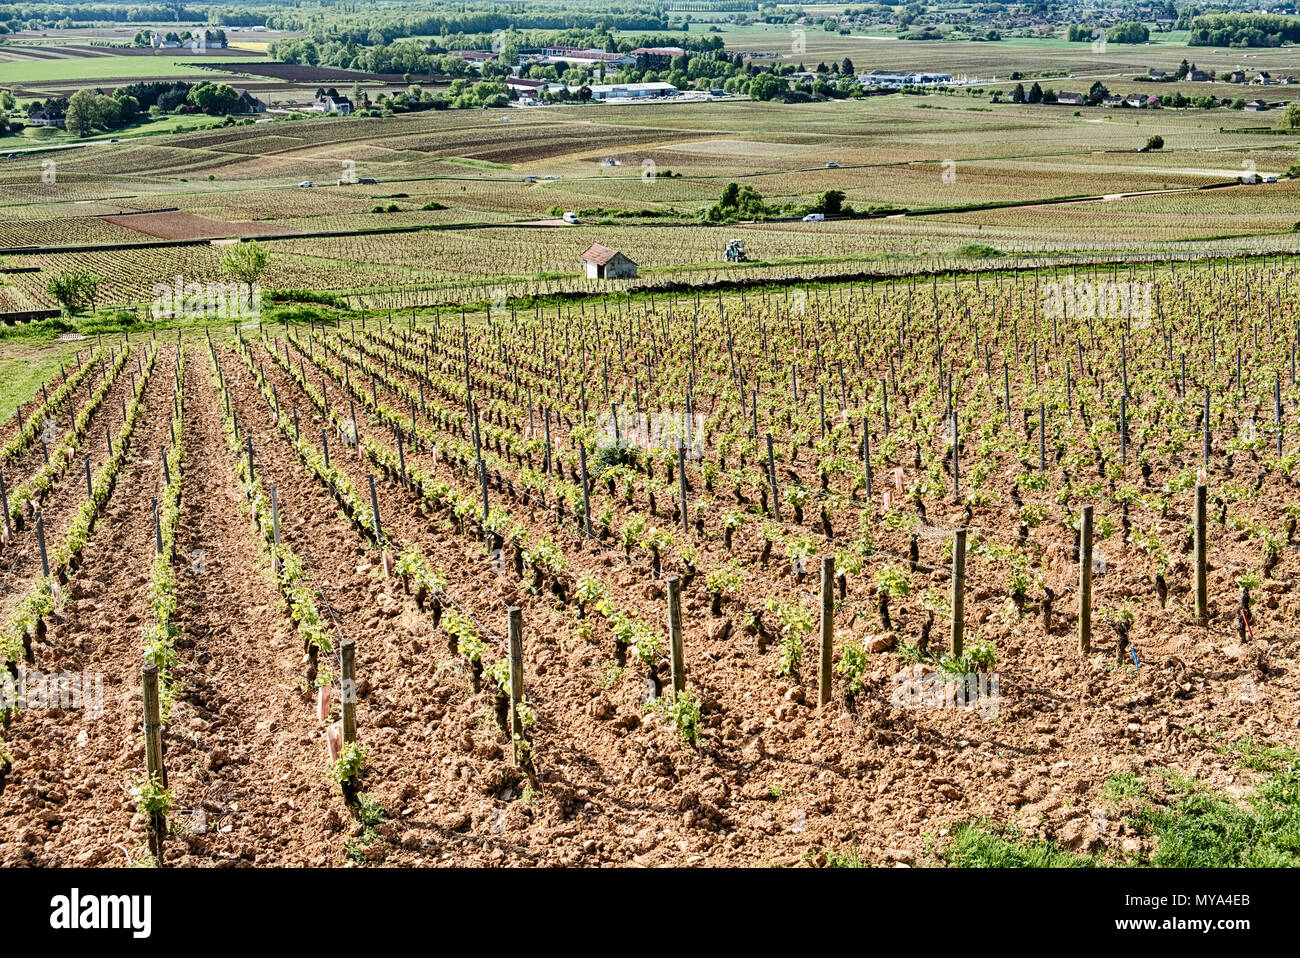 Le Corton grand cru est un vignoble en Bourgogne. La petite ville rurale de Alexe-Corton est dans l'arrière-plan au bas de la colline. Banque D'Images